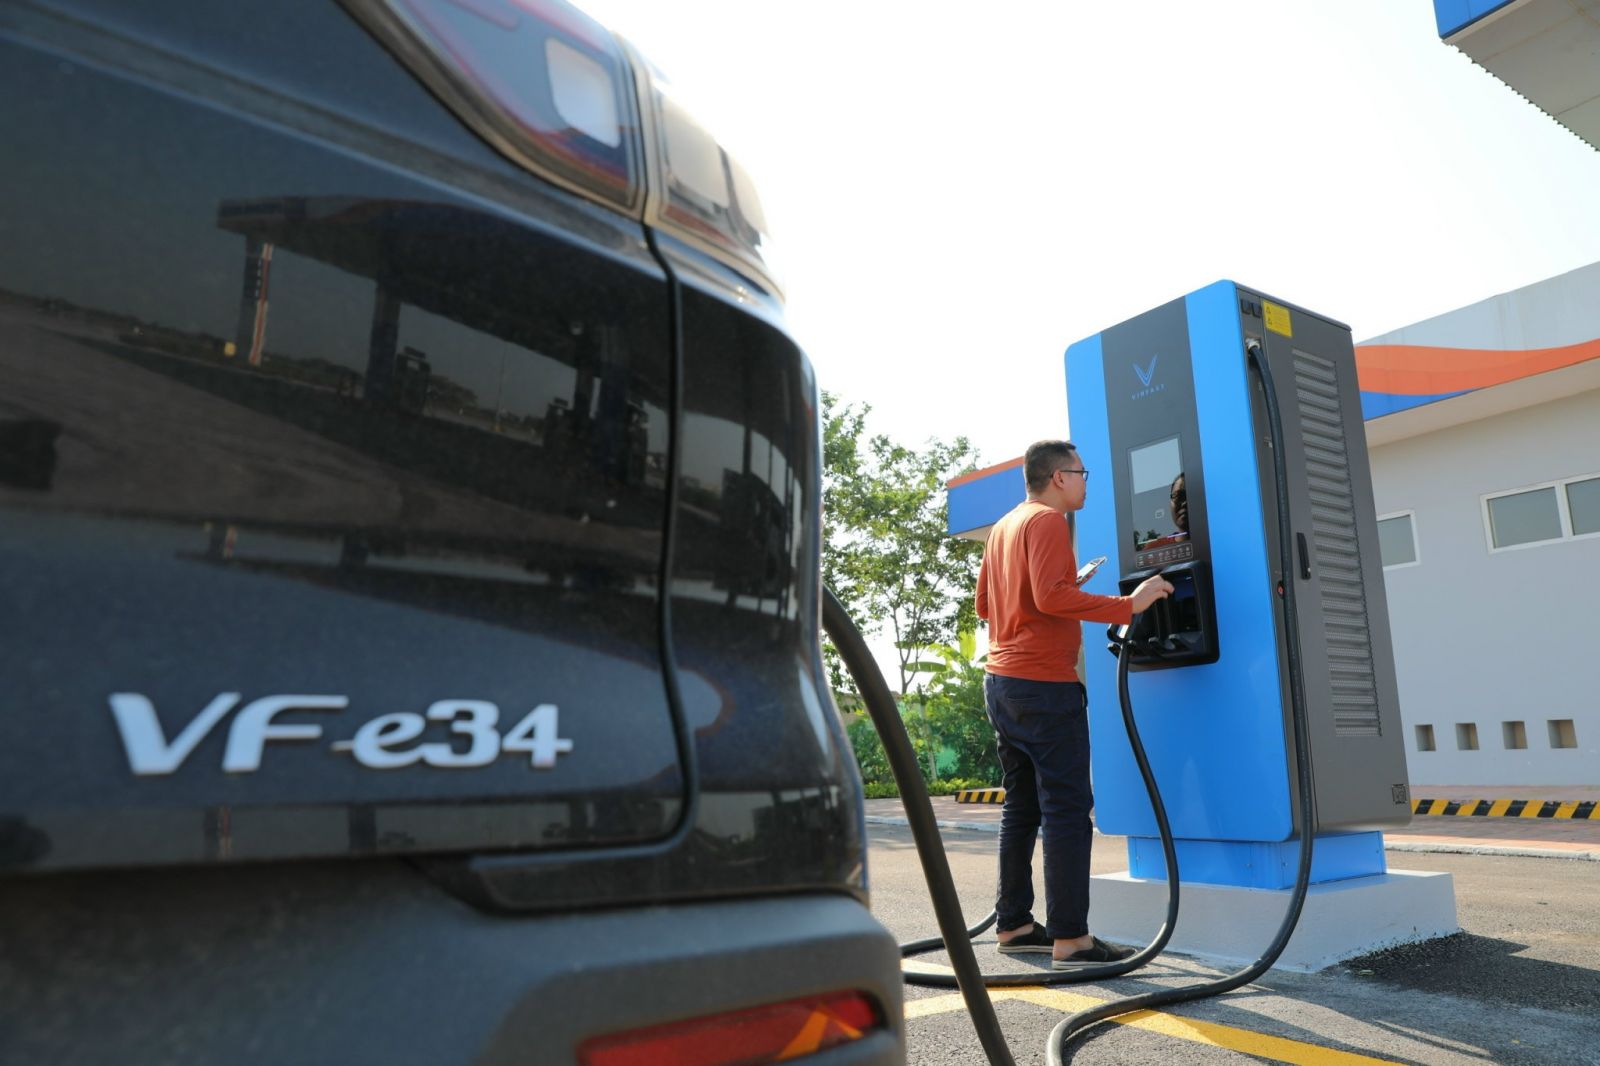 Thay vì mua xăng, khách hàng đi xe điện có thể vào trạm sạc của Petrolimex để sạc xe ô tô điện Vinfast  Đ.H